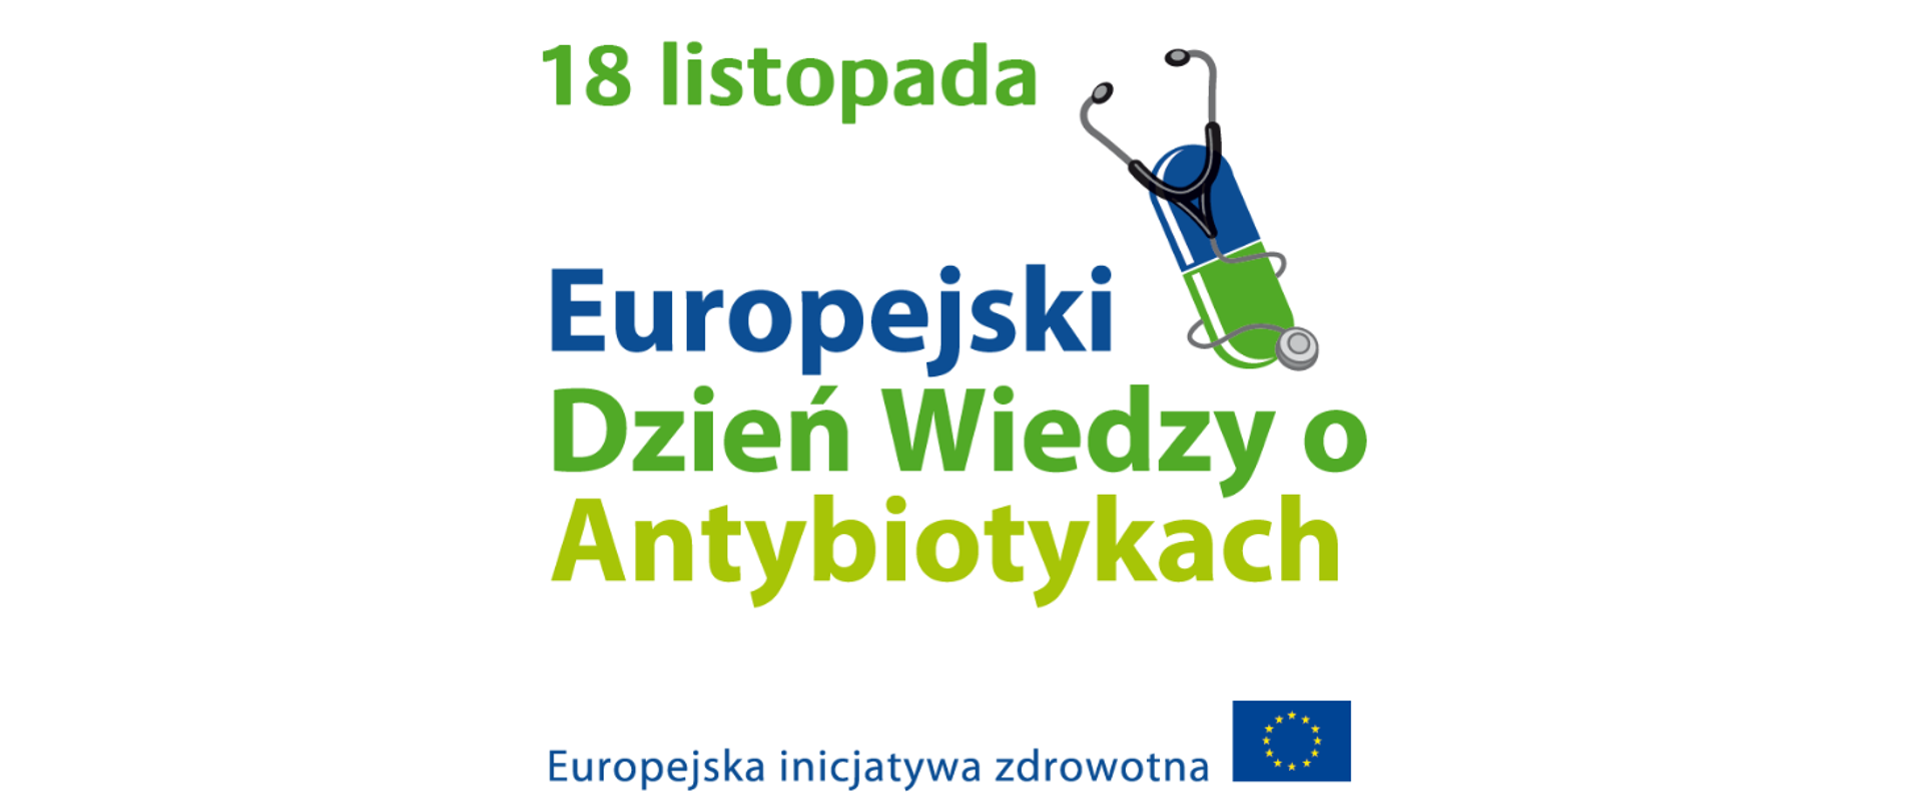 Grafika na białym tle zawierająca napis Europejski Dzień Wiedzy o Antybiotykach, Europejska inicjatywa zdrowotna, koloru zielonego i niebieskiego